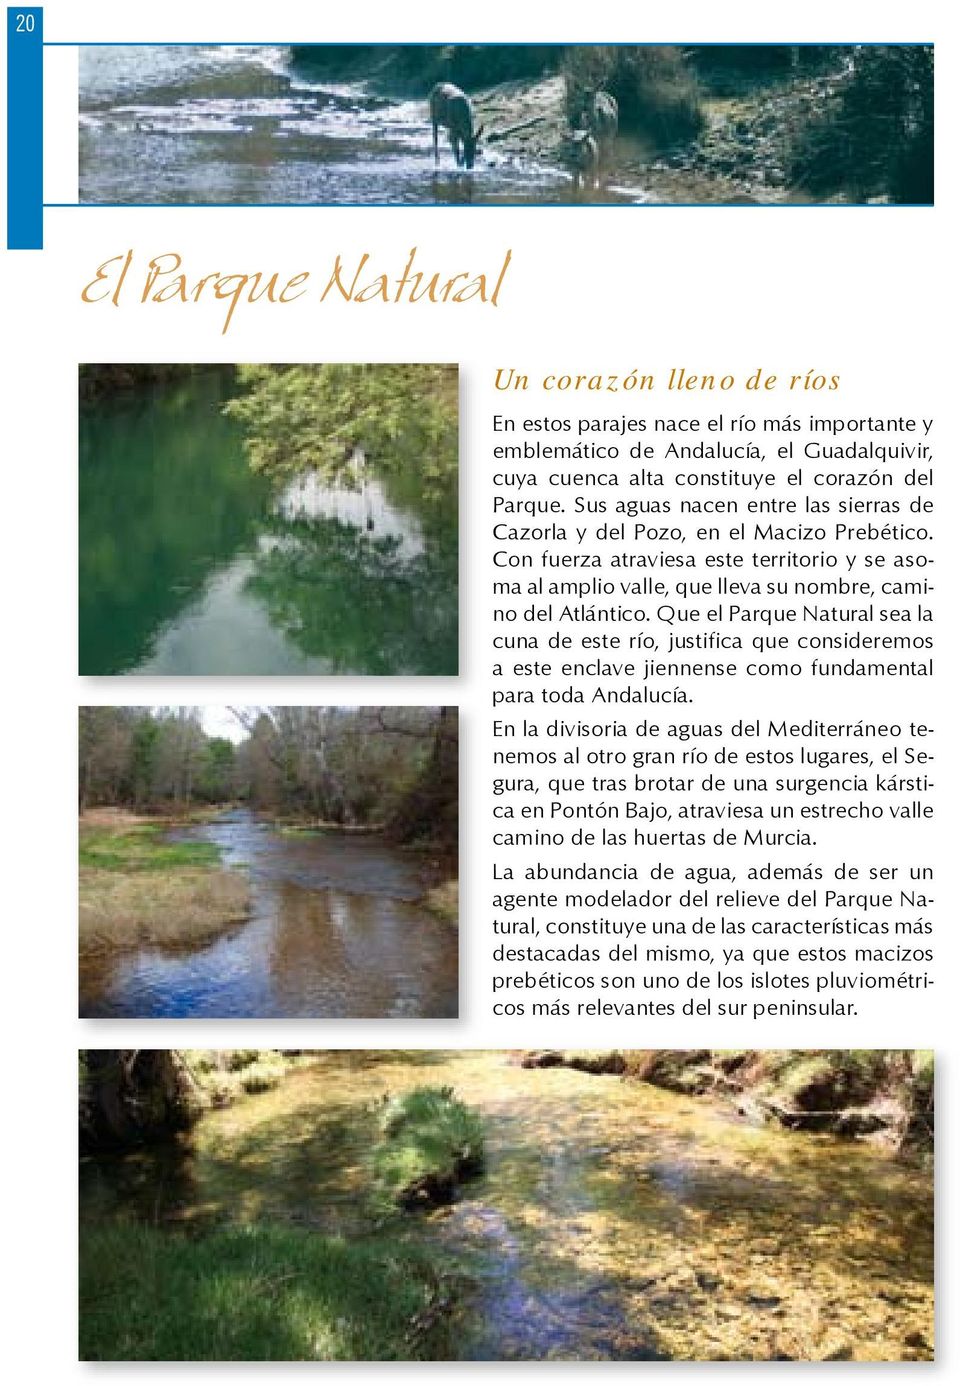 Que el Parque Natural sea la cuna de este río, justifica que consideremos a este enclave jiennense como fundamental para toda Andalucía.